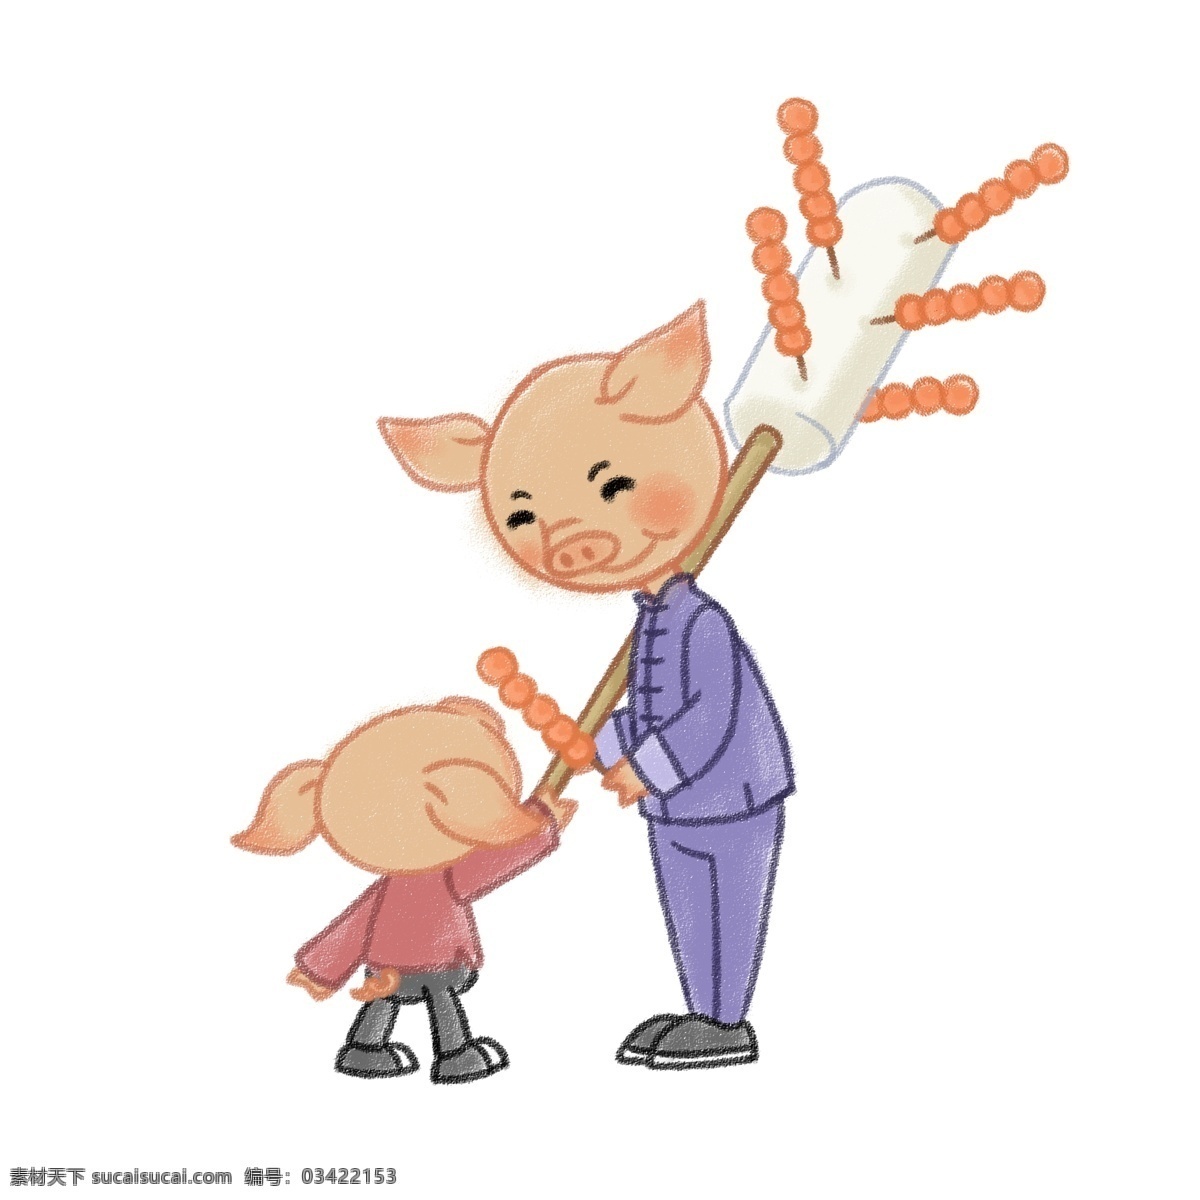 猪年 庙会 买 糖葫芦 新年 2019年 民俗 小吃 q版 蜡笔风格 小猪 可爱 童趣